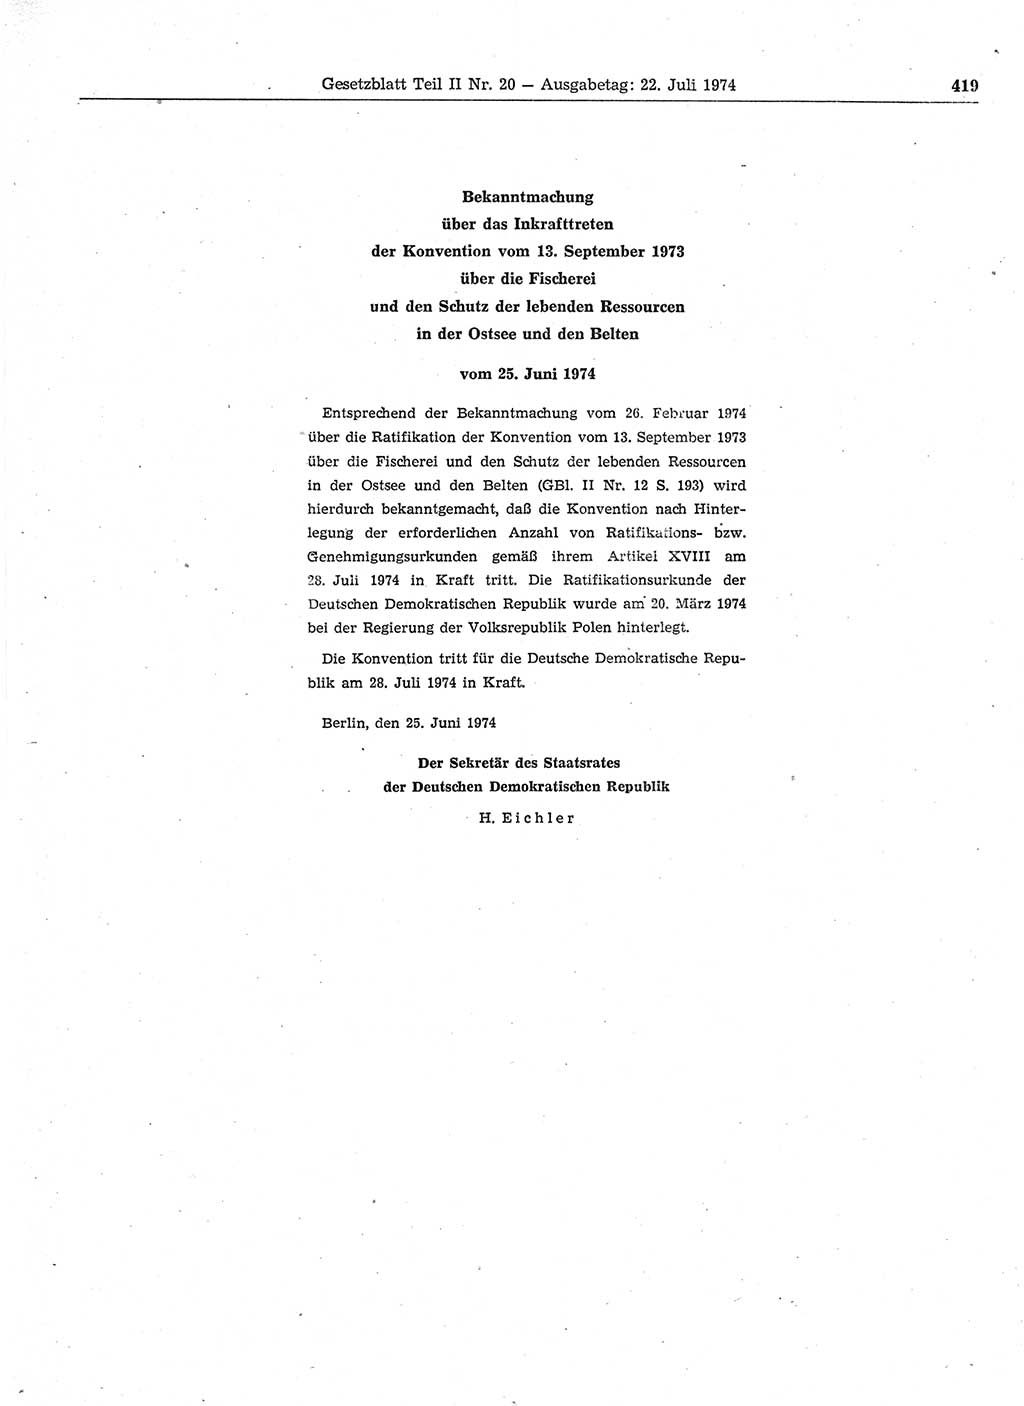 Gesetzblatt (GBl.) der Deutschen Demokratischen Republik (DDR) Teil ⅠⅠ 1974, Seite 419 (GBl. DDR ⅠⅠ 1974, S. 419)